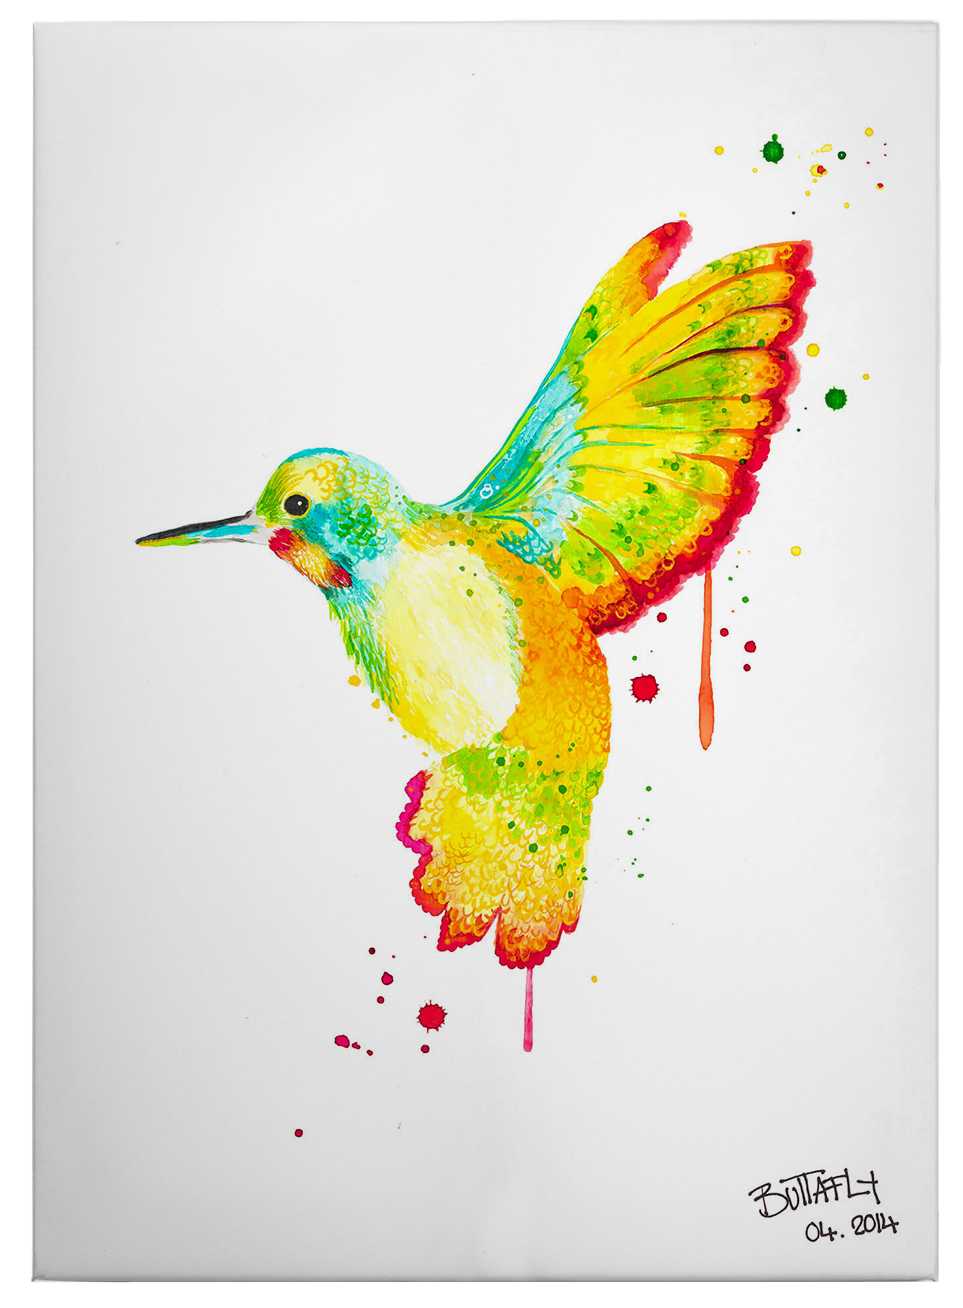             Humingbird canvas print by Buttafly – colourflul
        